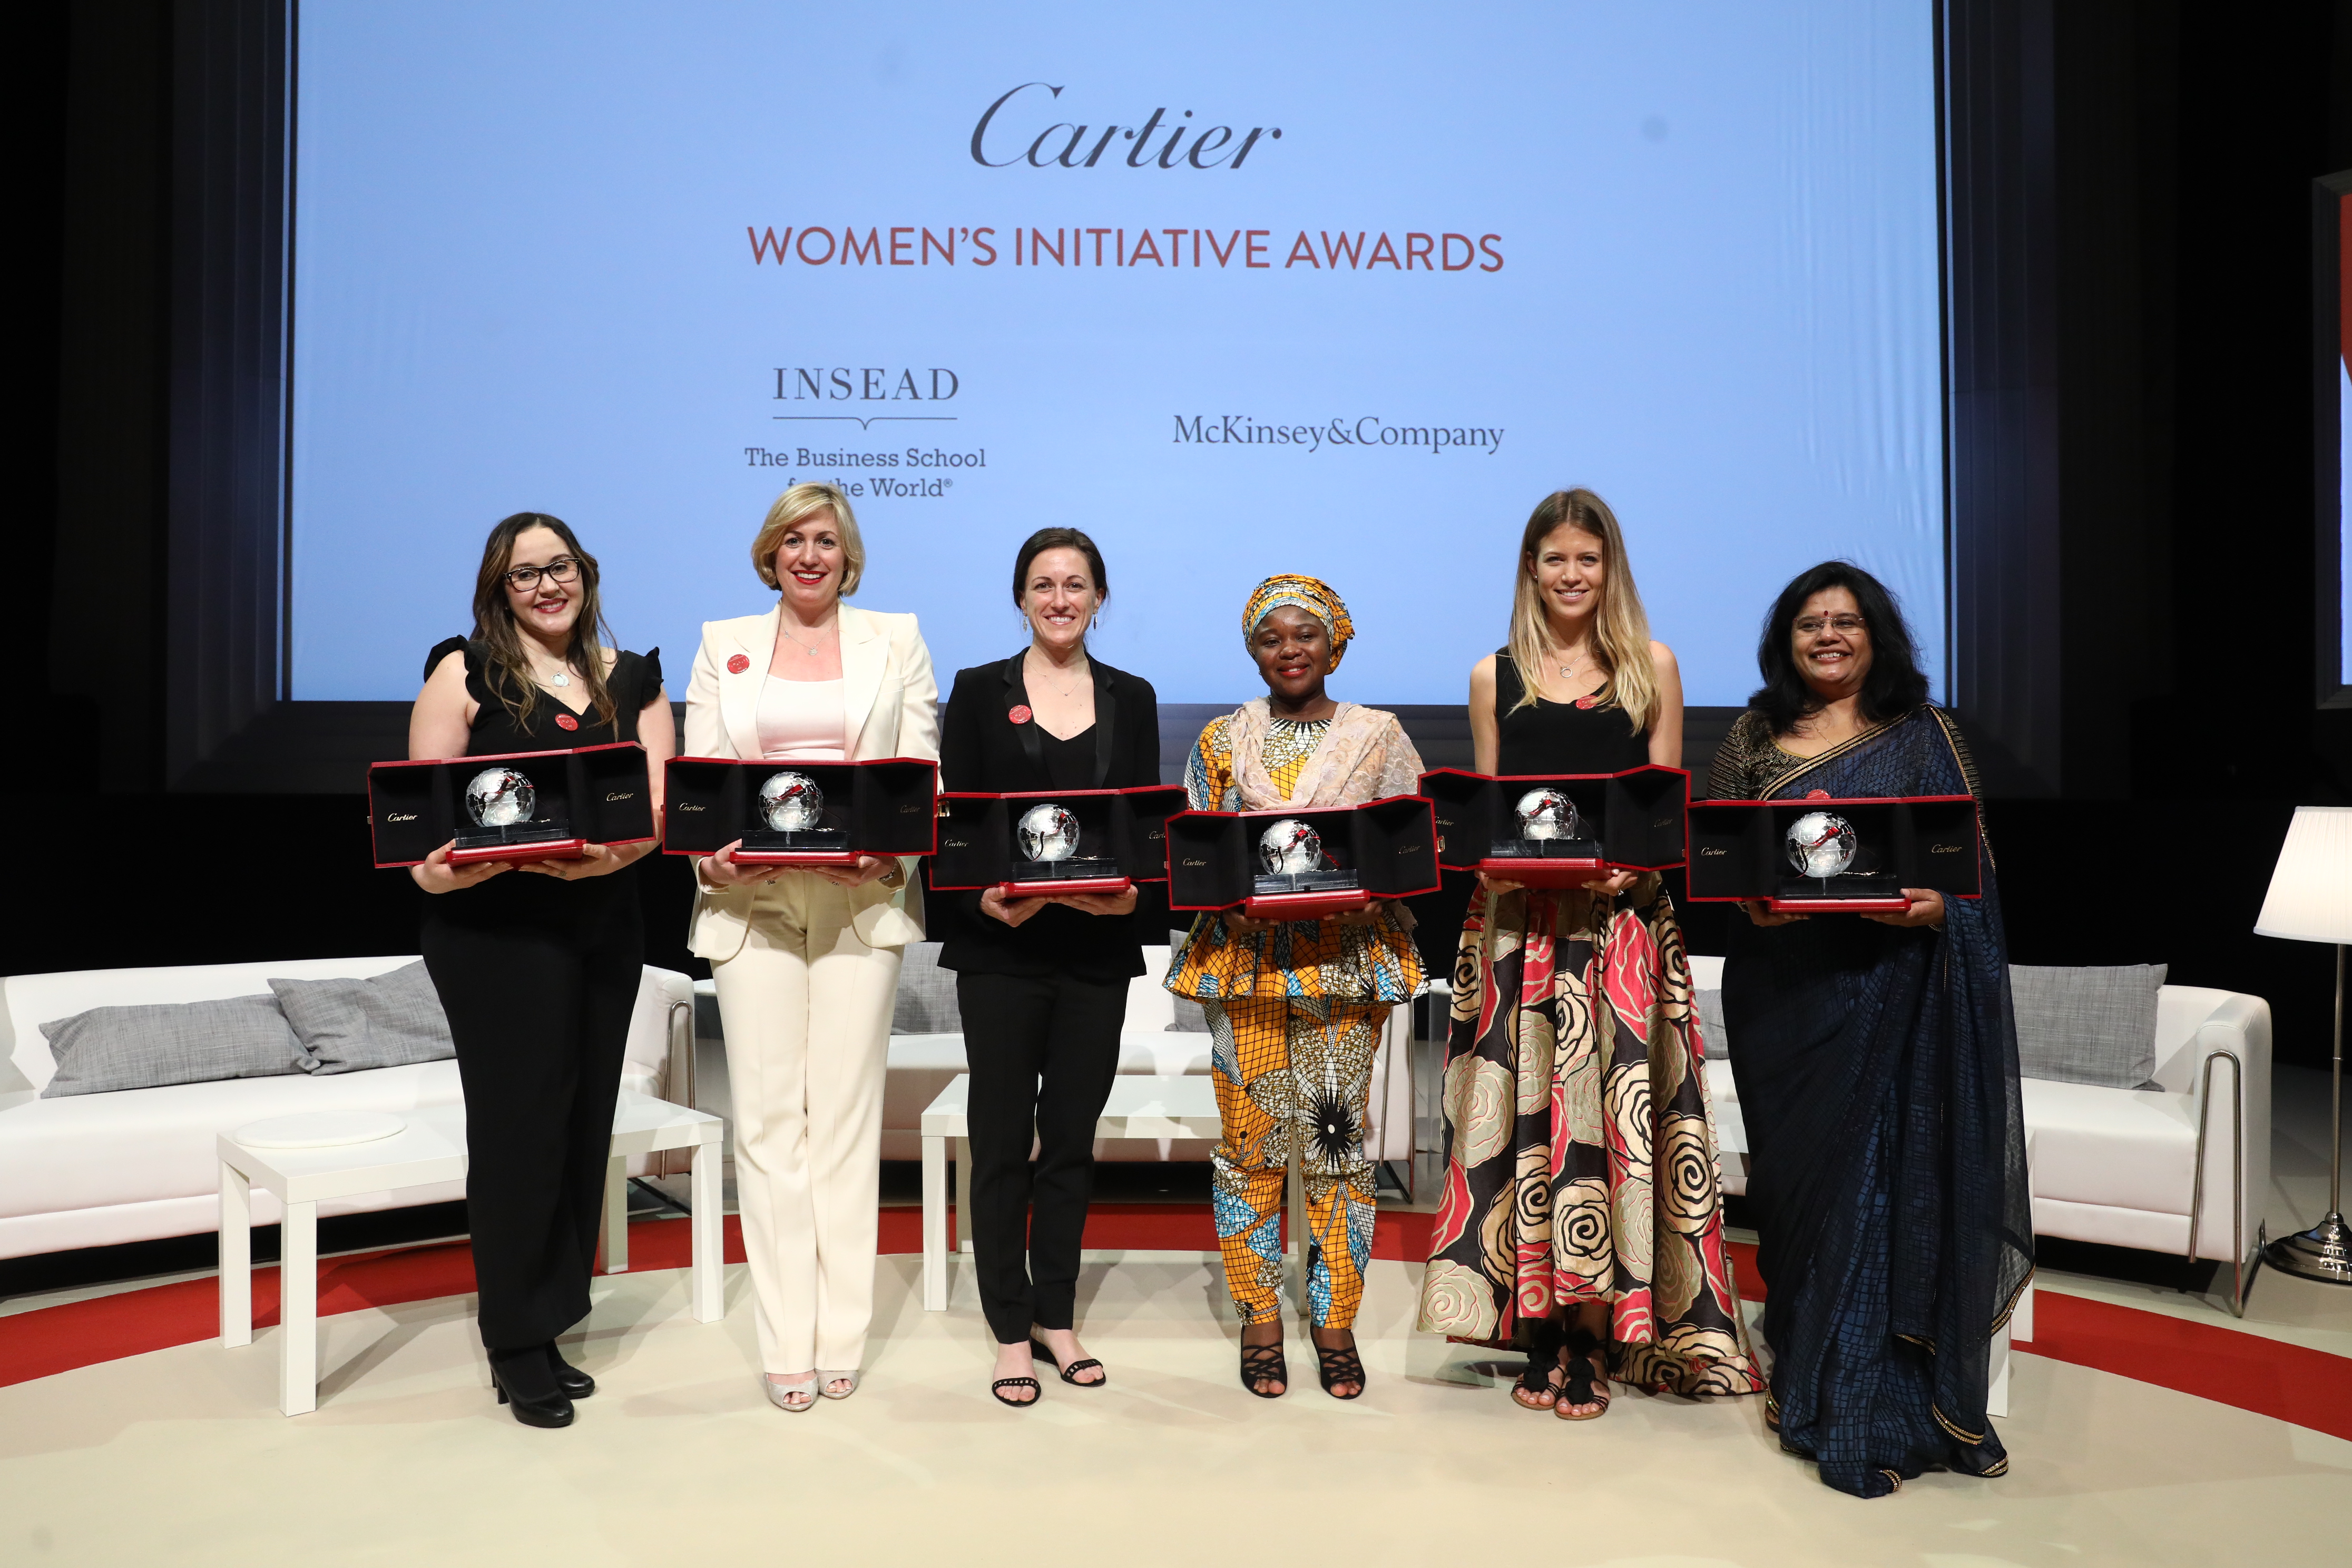 cartier awards 2018 singapore